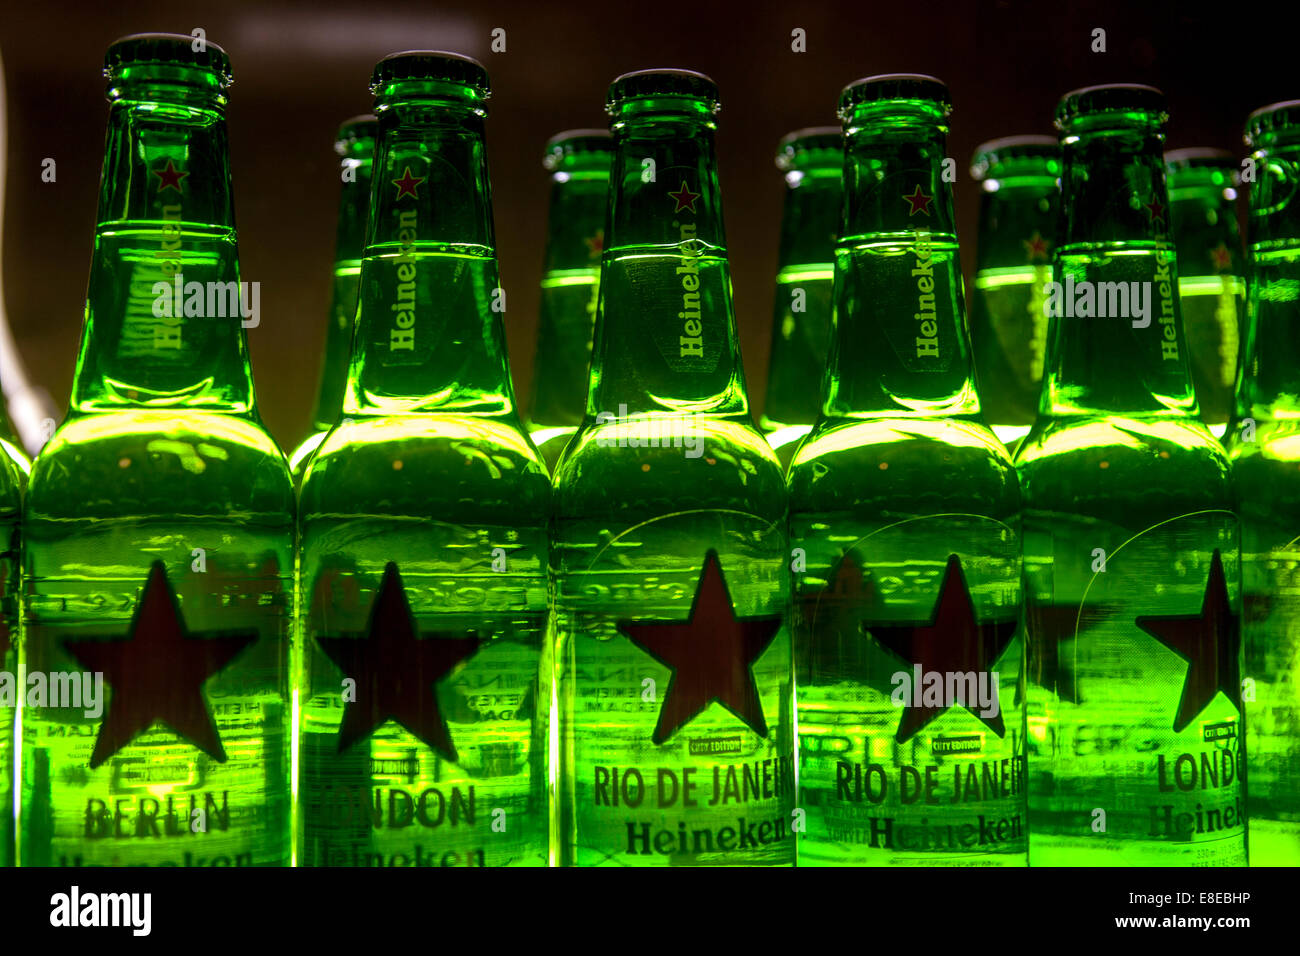 green bottles of Heineken beer Stock Photo